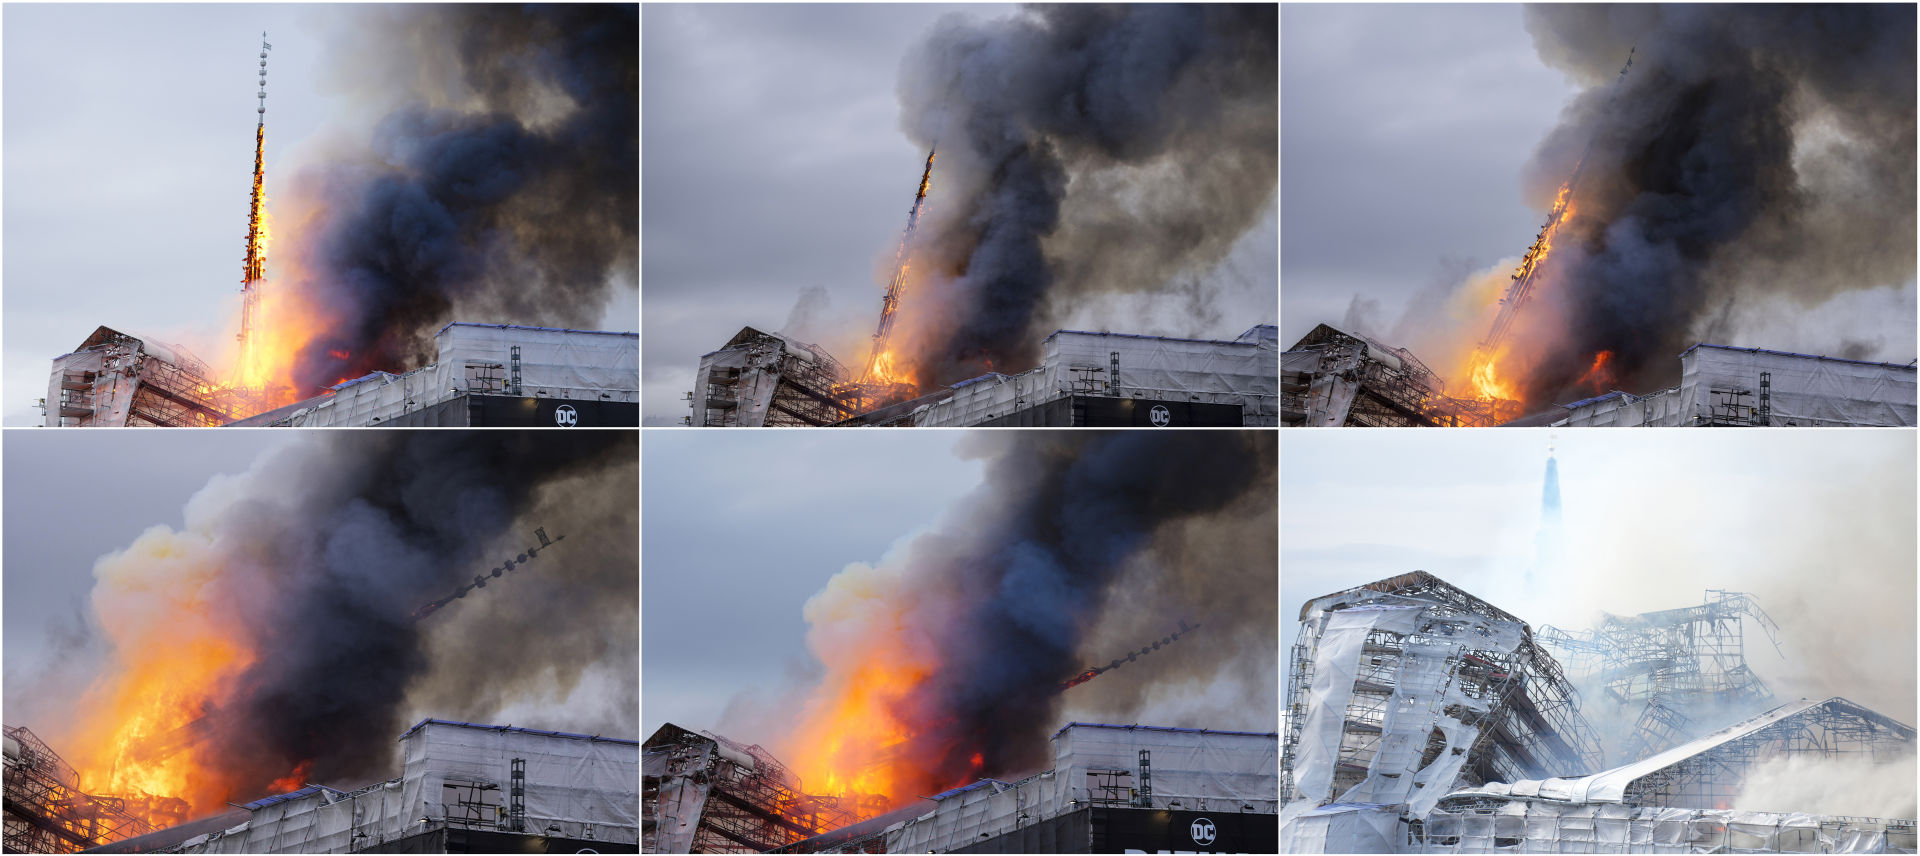 Historickú budovu burzy v centre Kodane zachvátil požiar.